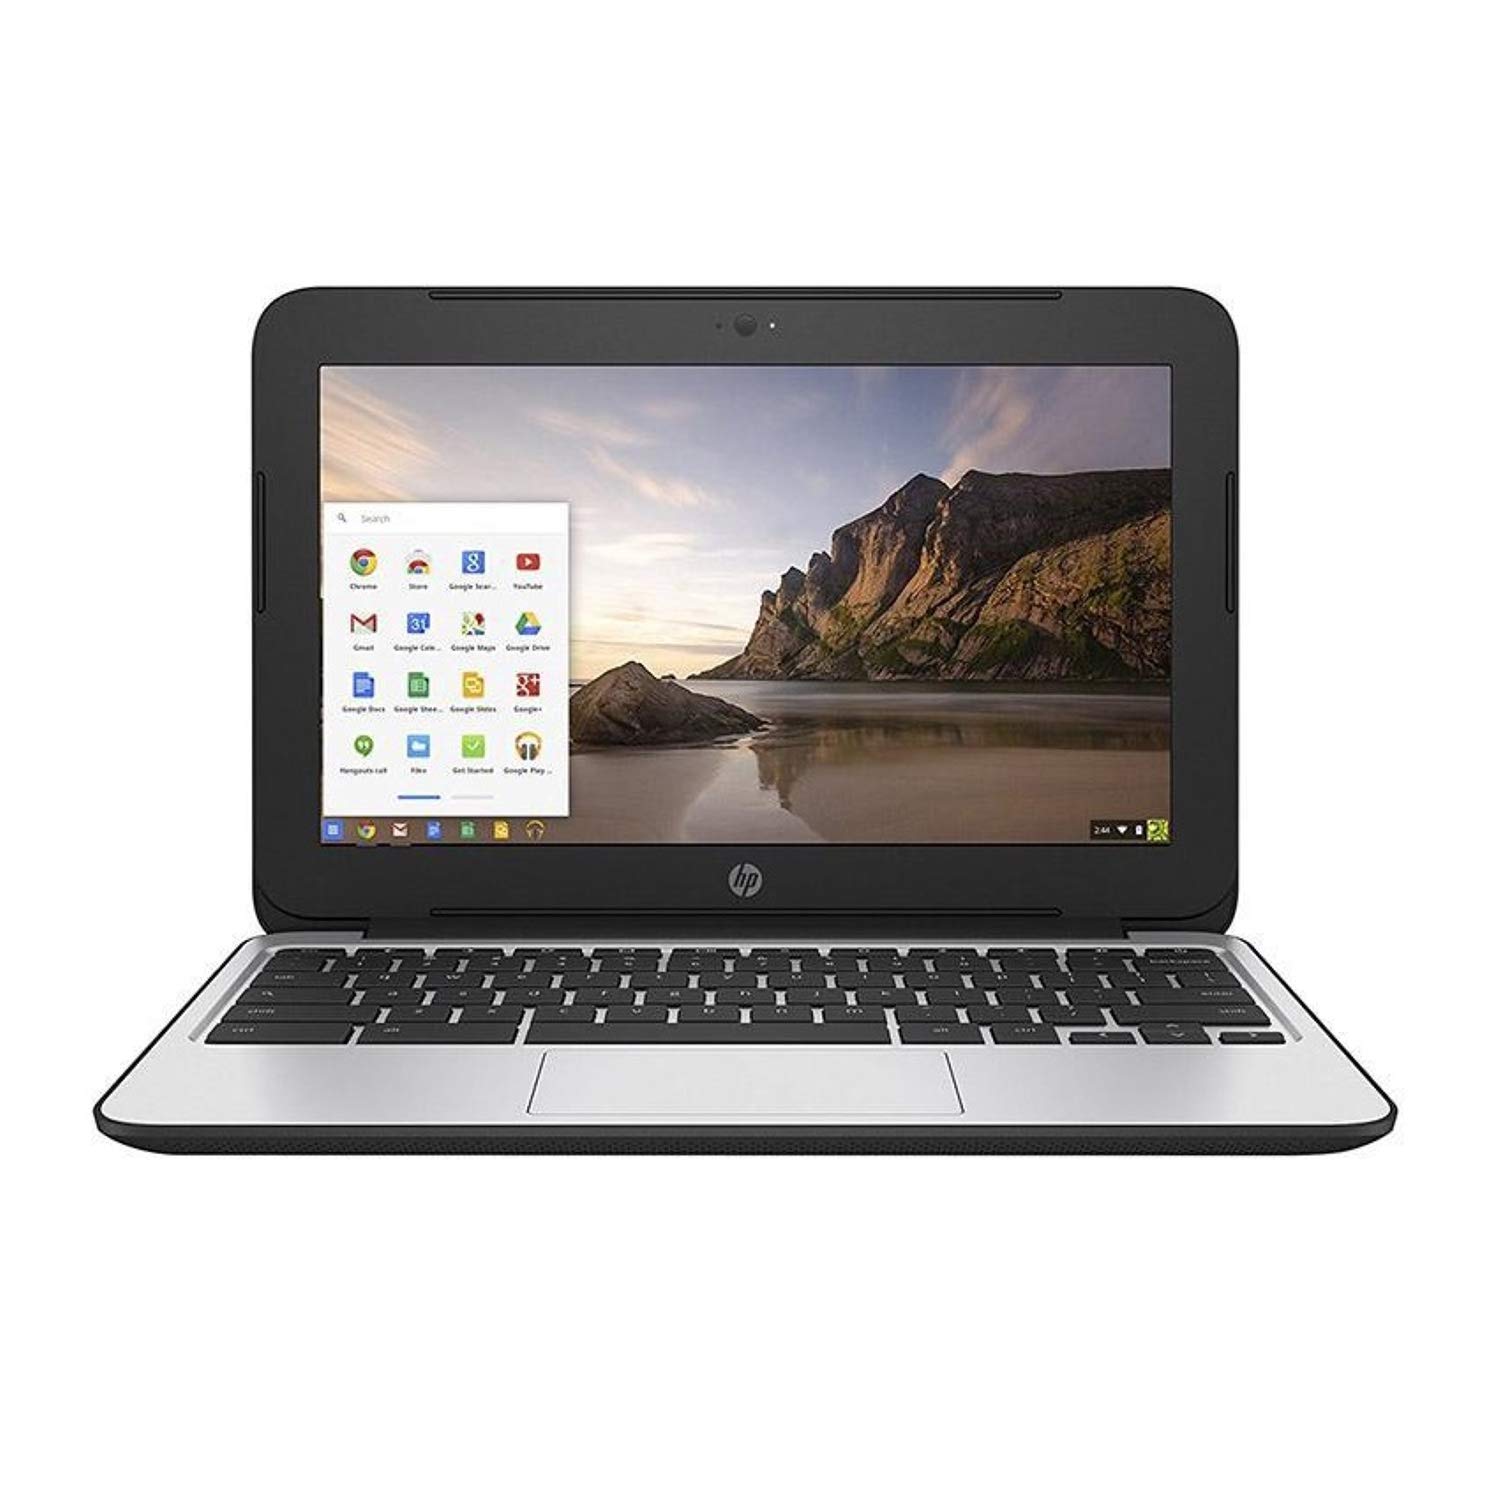 HP Chromebook 11 G3 - Intel N2830 @ 2.16 GHz, 2GB RAM, 16 GB SSD, Bluetooth, Webcam, Chrome OS *Refurbished*